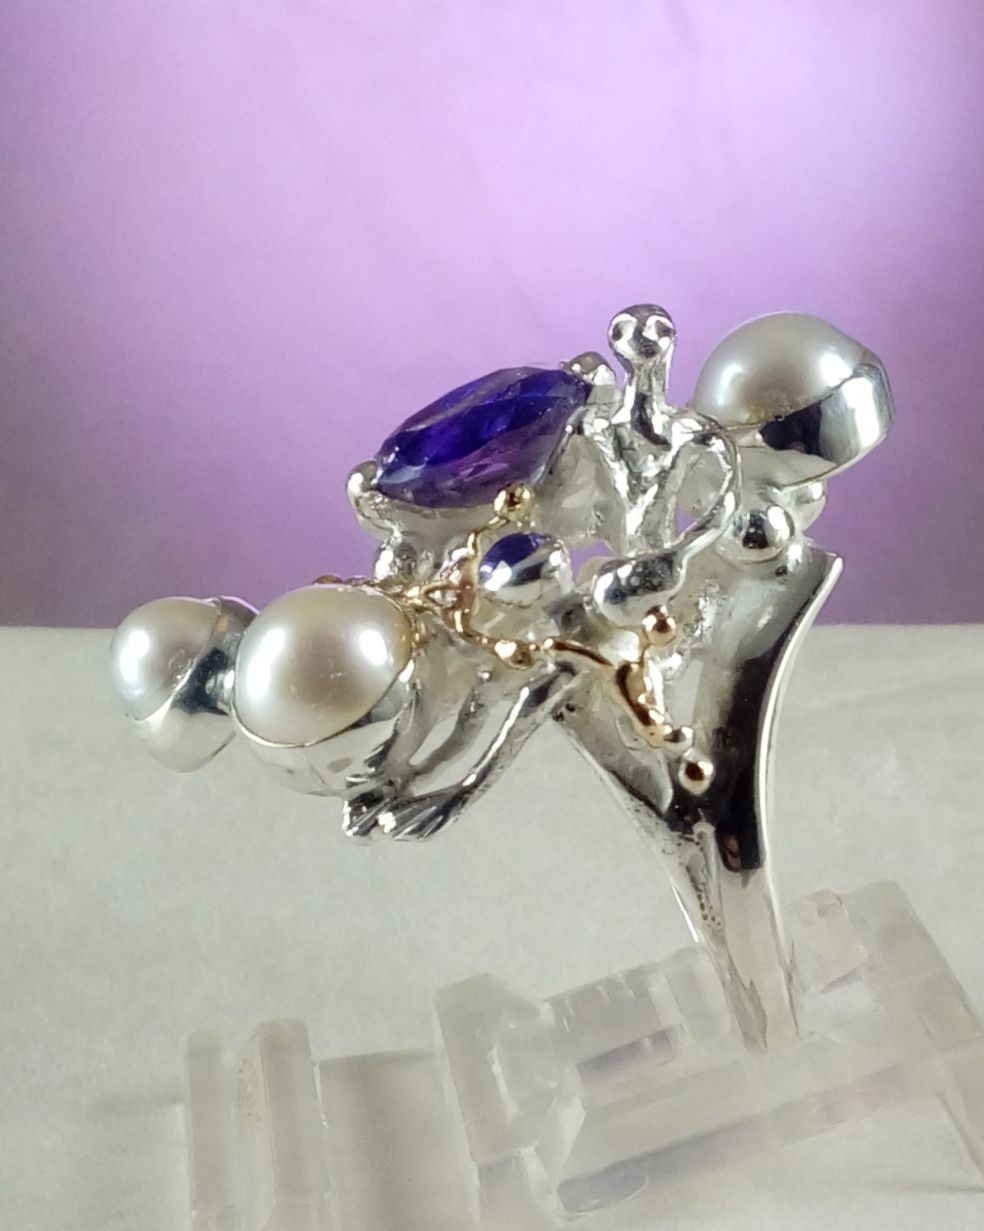 gregory pyra piro anillo escultural 8070, joyas vendidas en galerías de arte, joyas vendidas en galerías artesanales, joyas hechas a mano con amatista, joyas hechas a mano con perlas, joyas que nadie más tiene, joyas escultóricas, anillo hecho a mano con amatista y perla